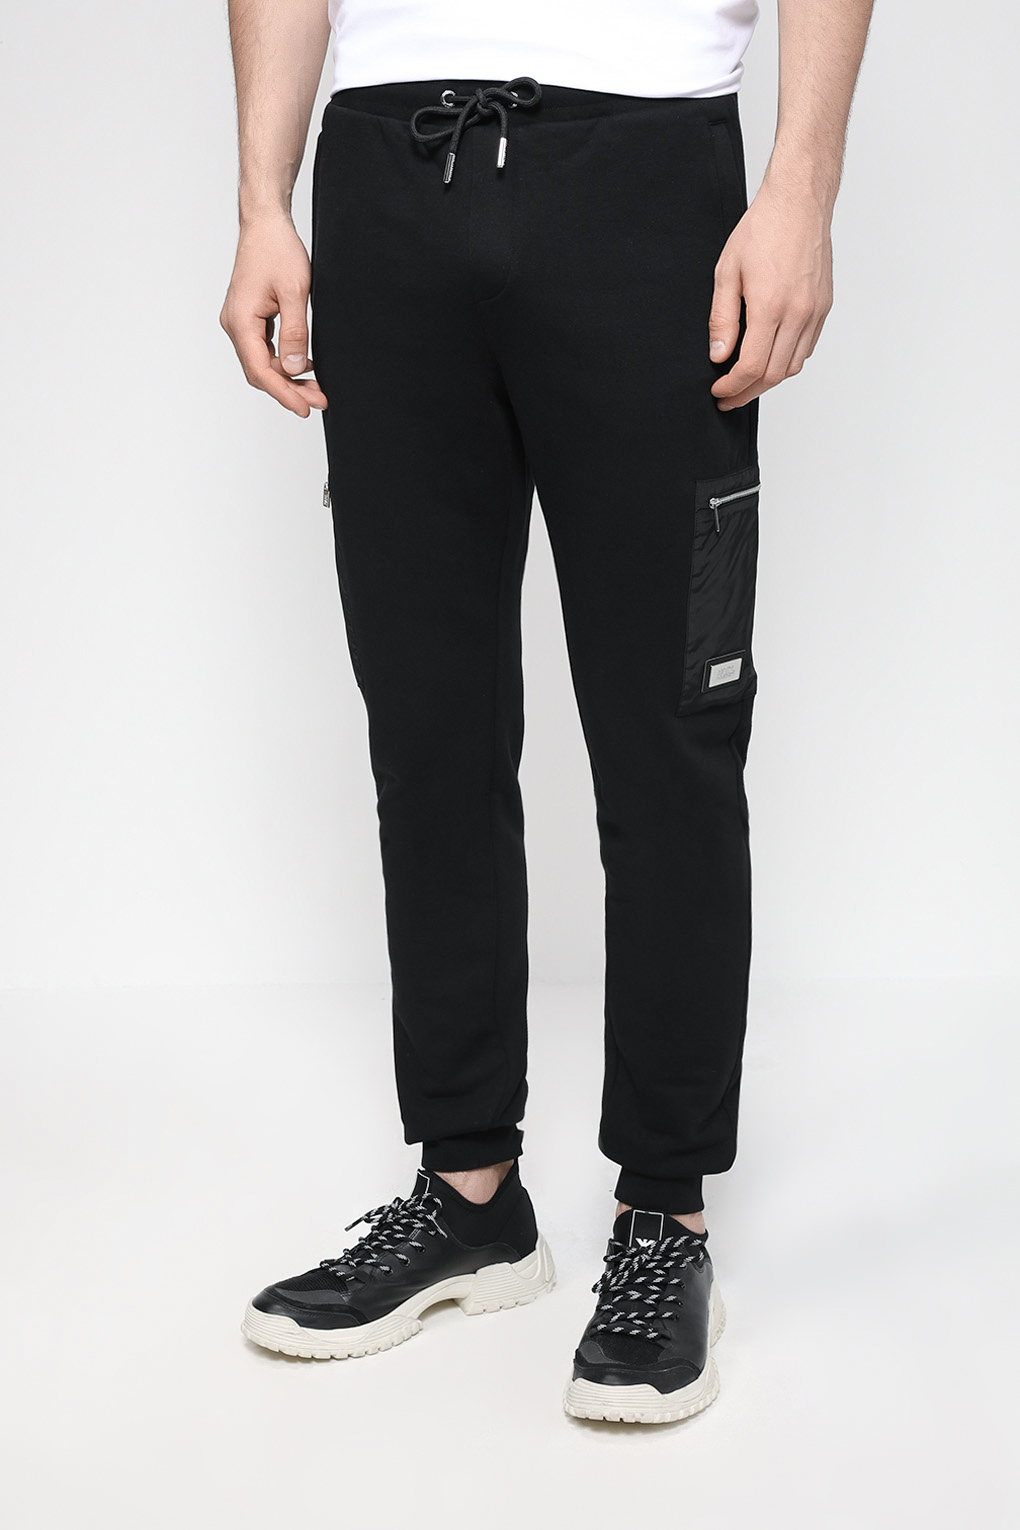 Спортивные брюки мужские Karl Lagerfeld 532900-705031 черные M